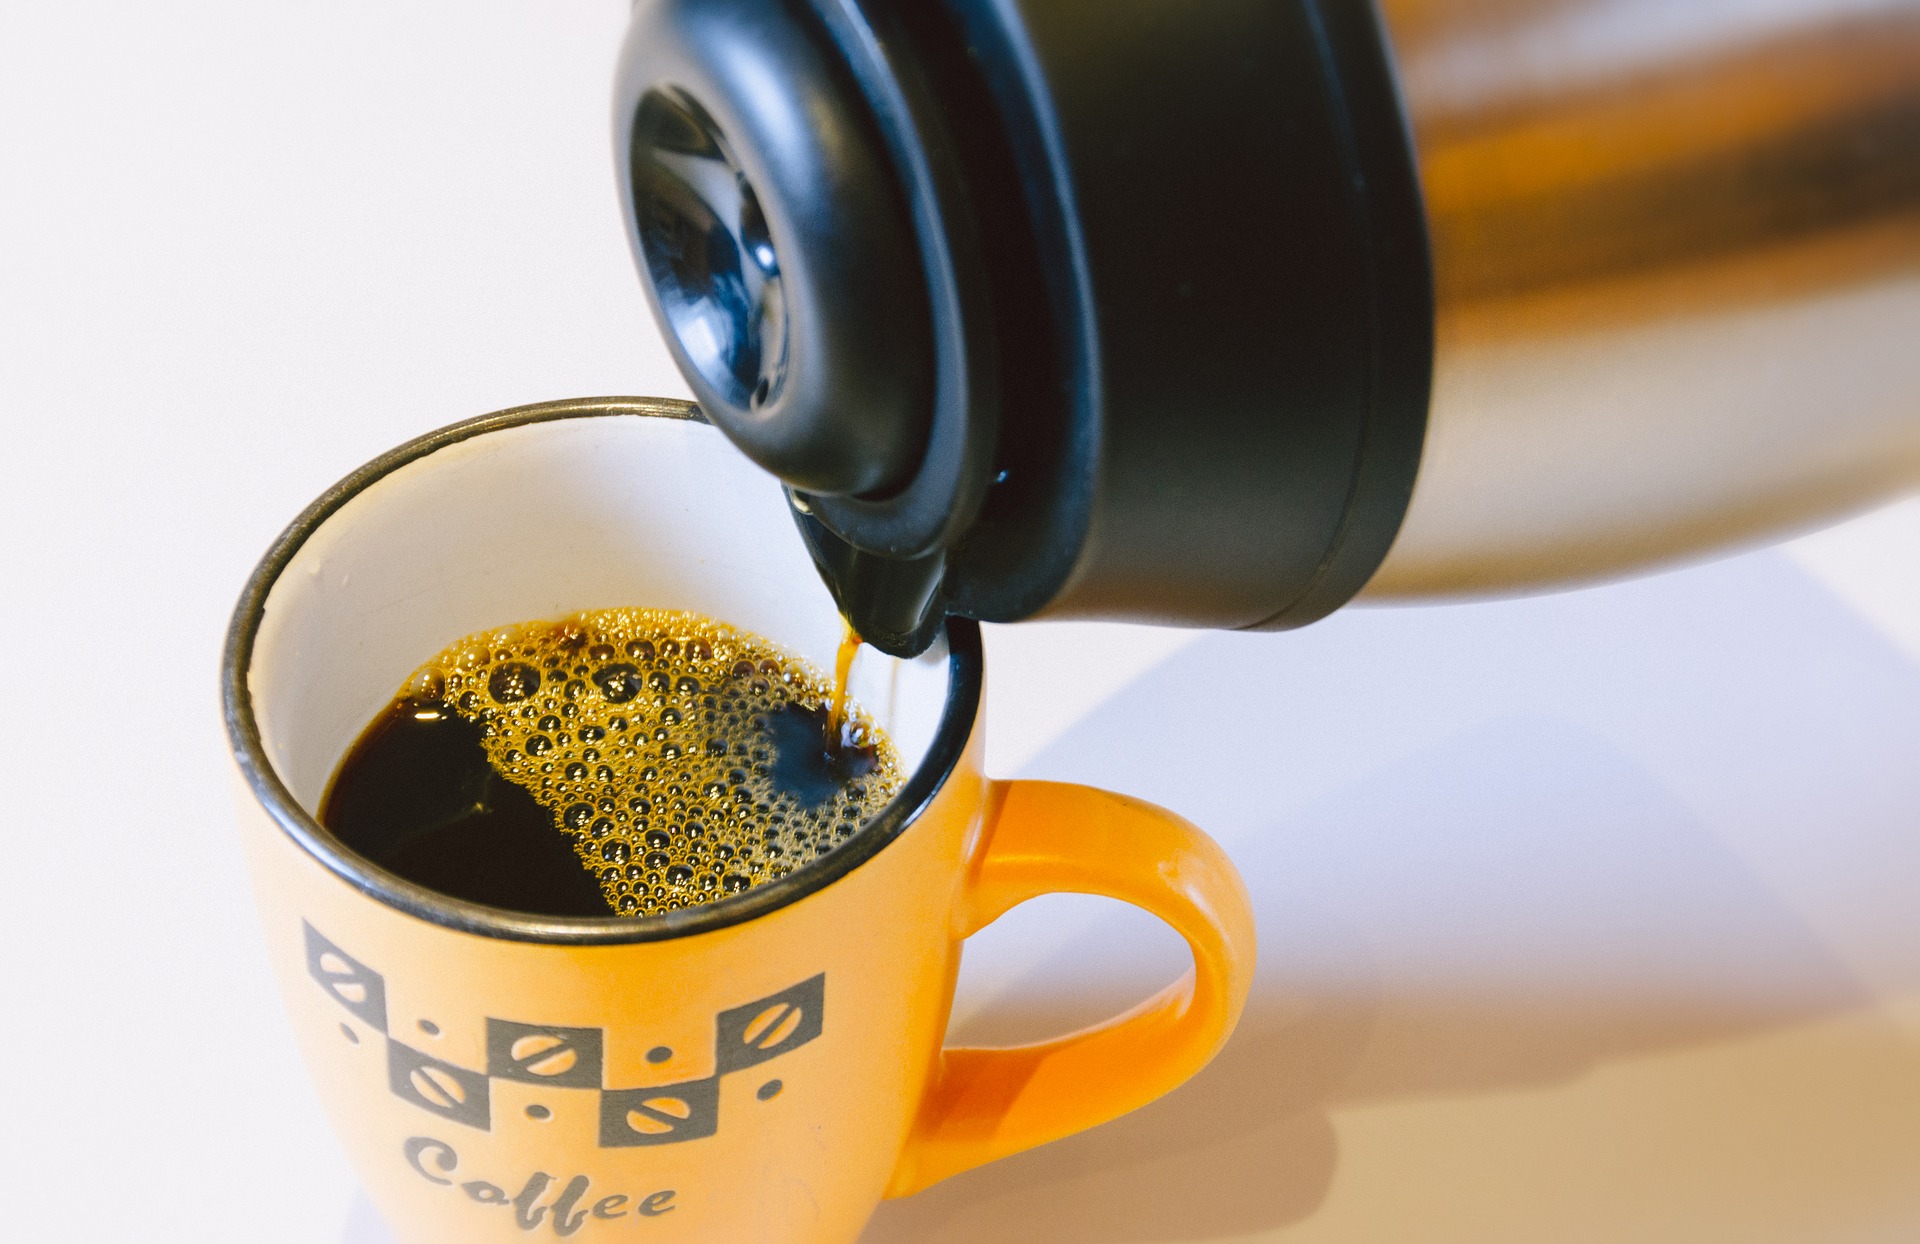 Kaffeekanne / Teekanne reinigen und säubern